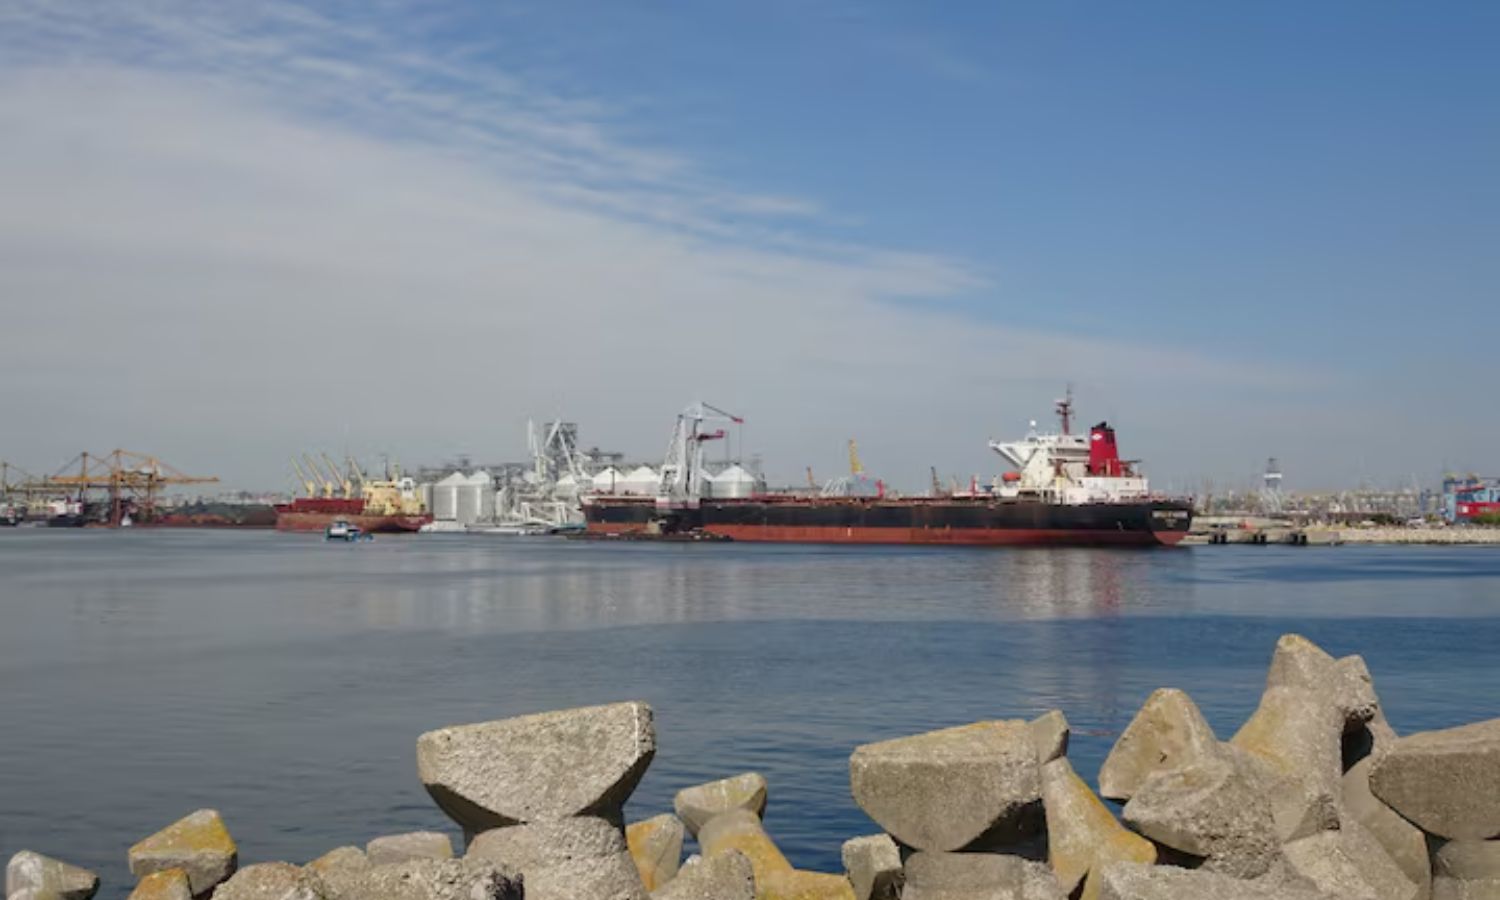 سفن في ميناء كونستانتا الروماني على البحر الأسود- 11 من أيار 2022 (رويترز)